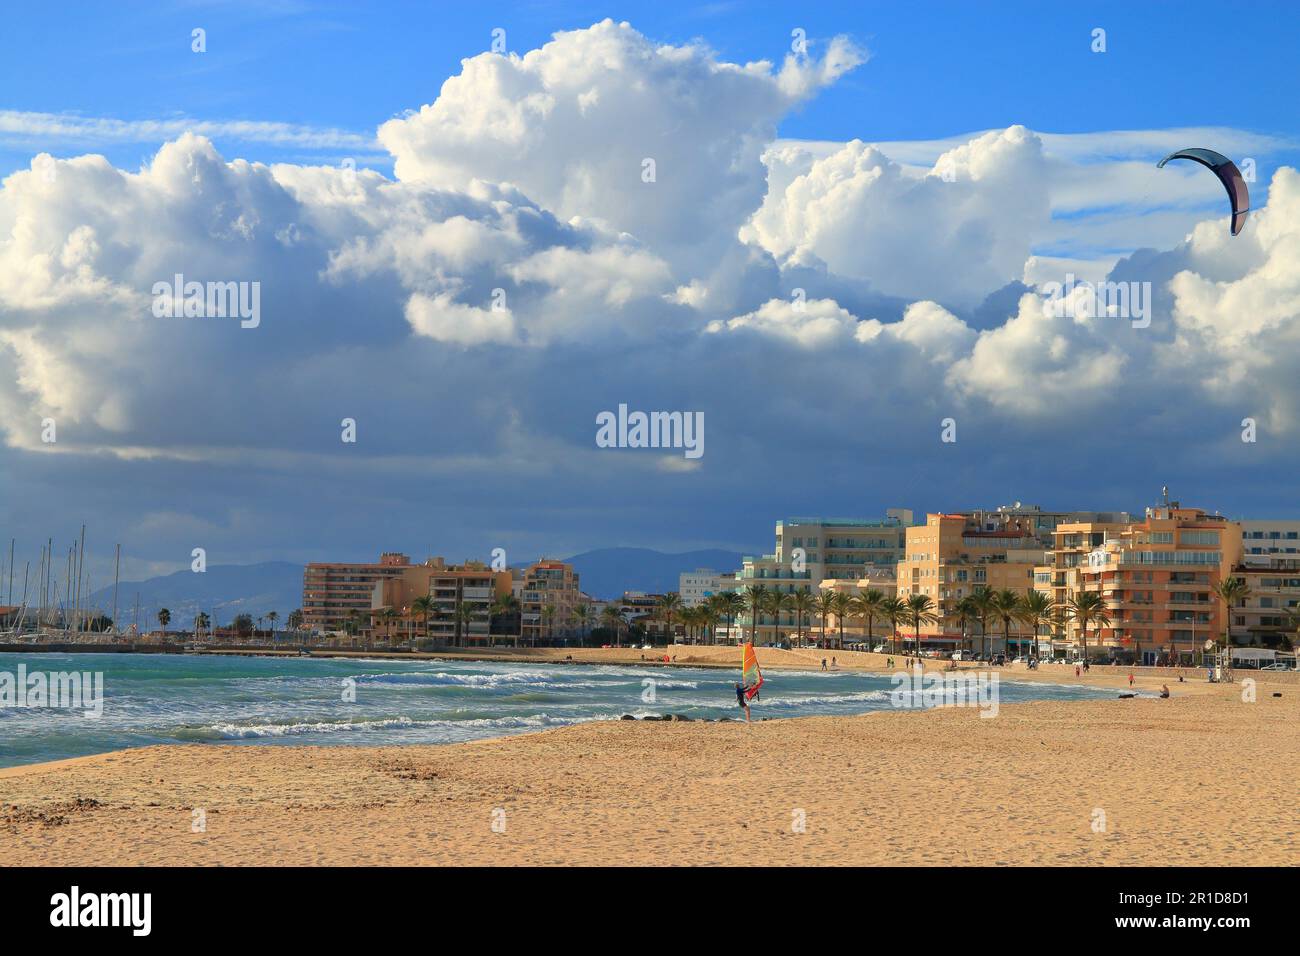 La foto è stata scattata in una giornata di sole autunnale sulla spiaggia dell'isola di Palma di Maiorca in una zona chiamata Can Pastilla. Foto Stock